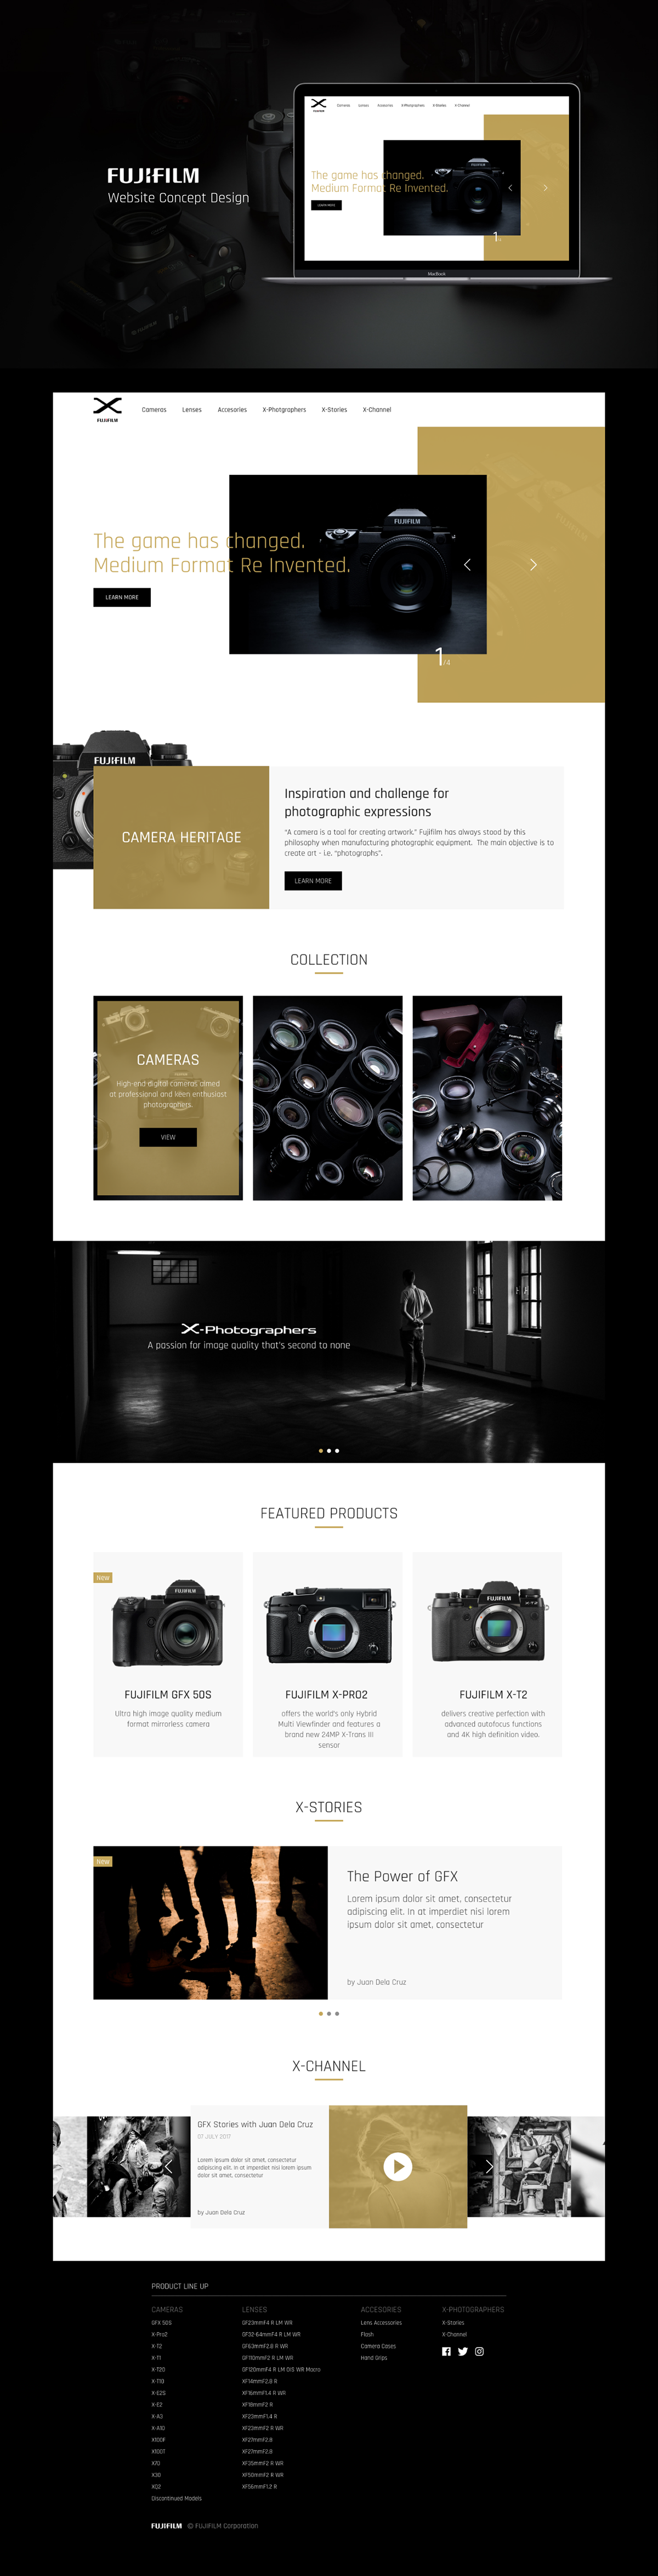 UI/UX Design Web Design  graphic design  minimal design complexion reduction ILLUSTRATION  Fujifilm Website Fujifilm X-Series Website